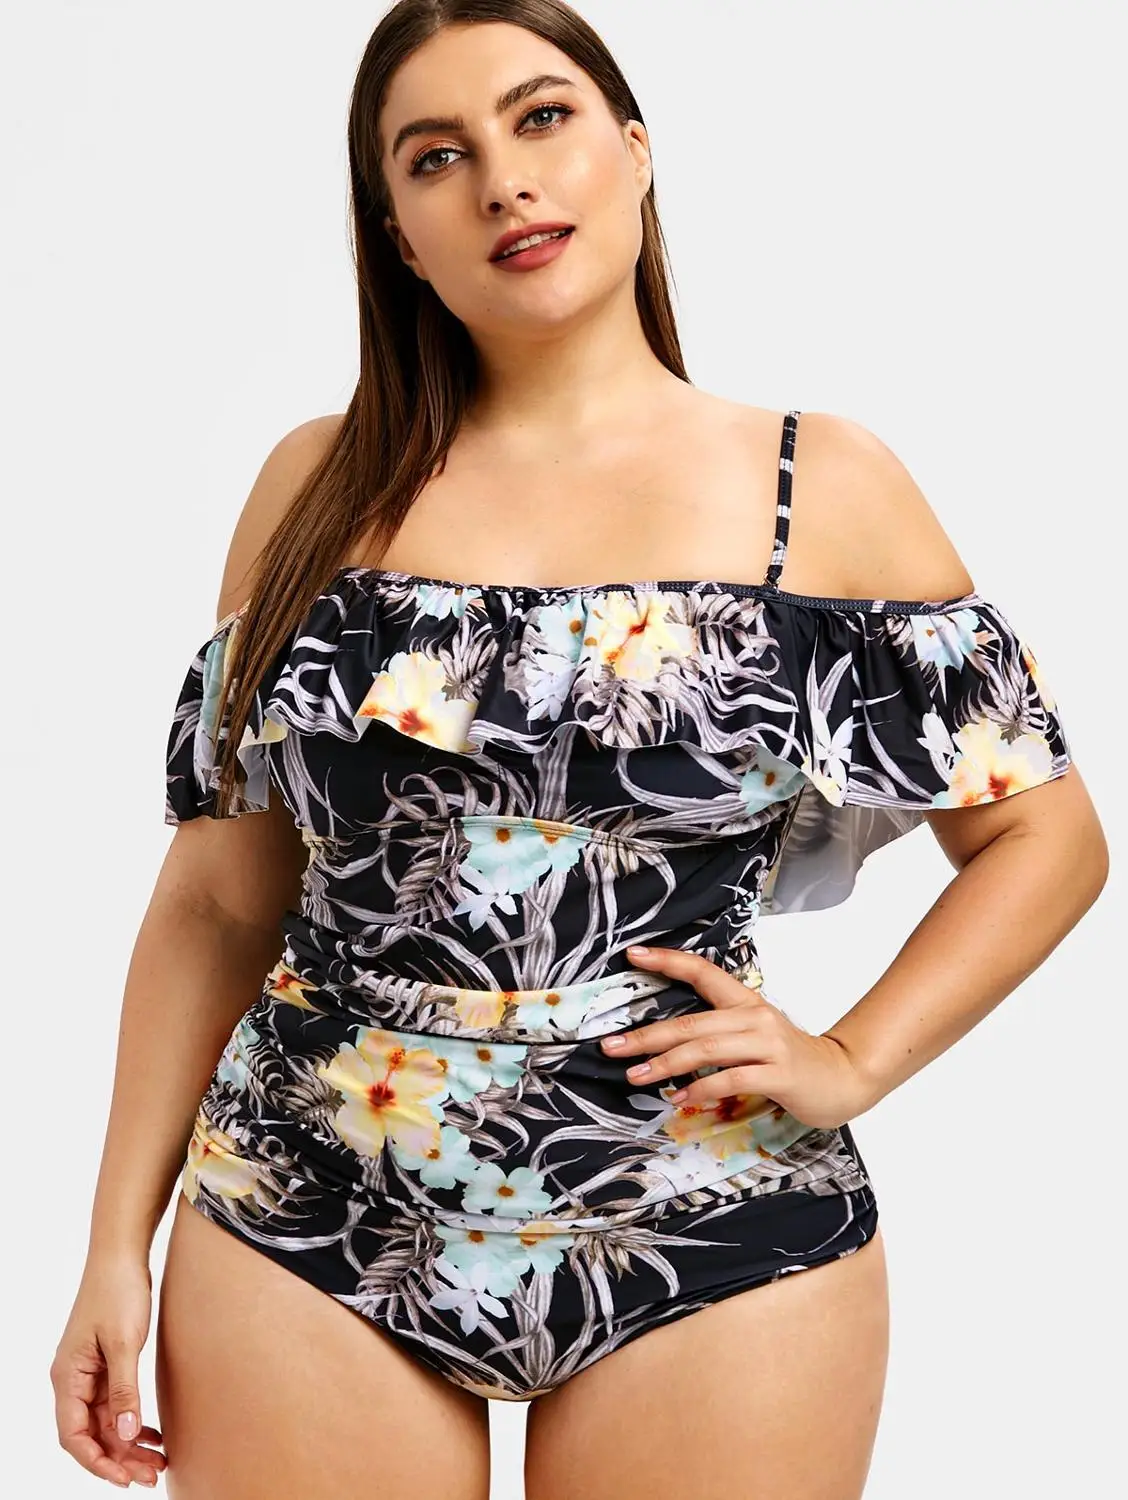 Плюс размер с рюшами и цветочным принтом отделка купальников Спагетти ремни Цельный купальник большой комплект для женщин темная пляжная одежда XXXL 5XL